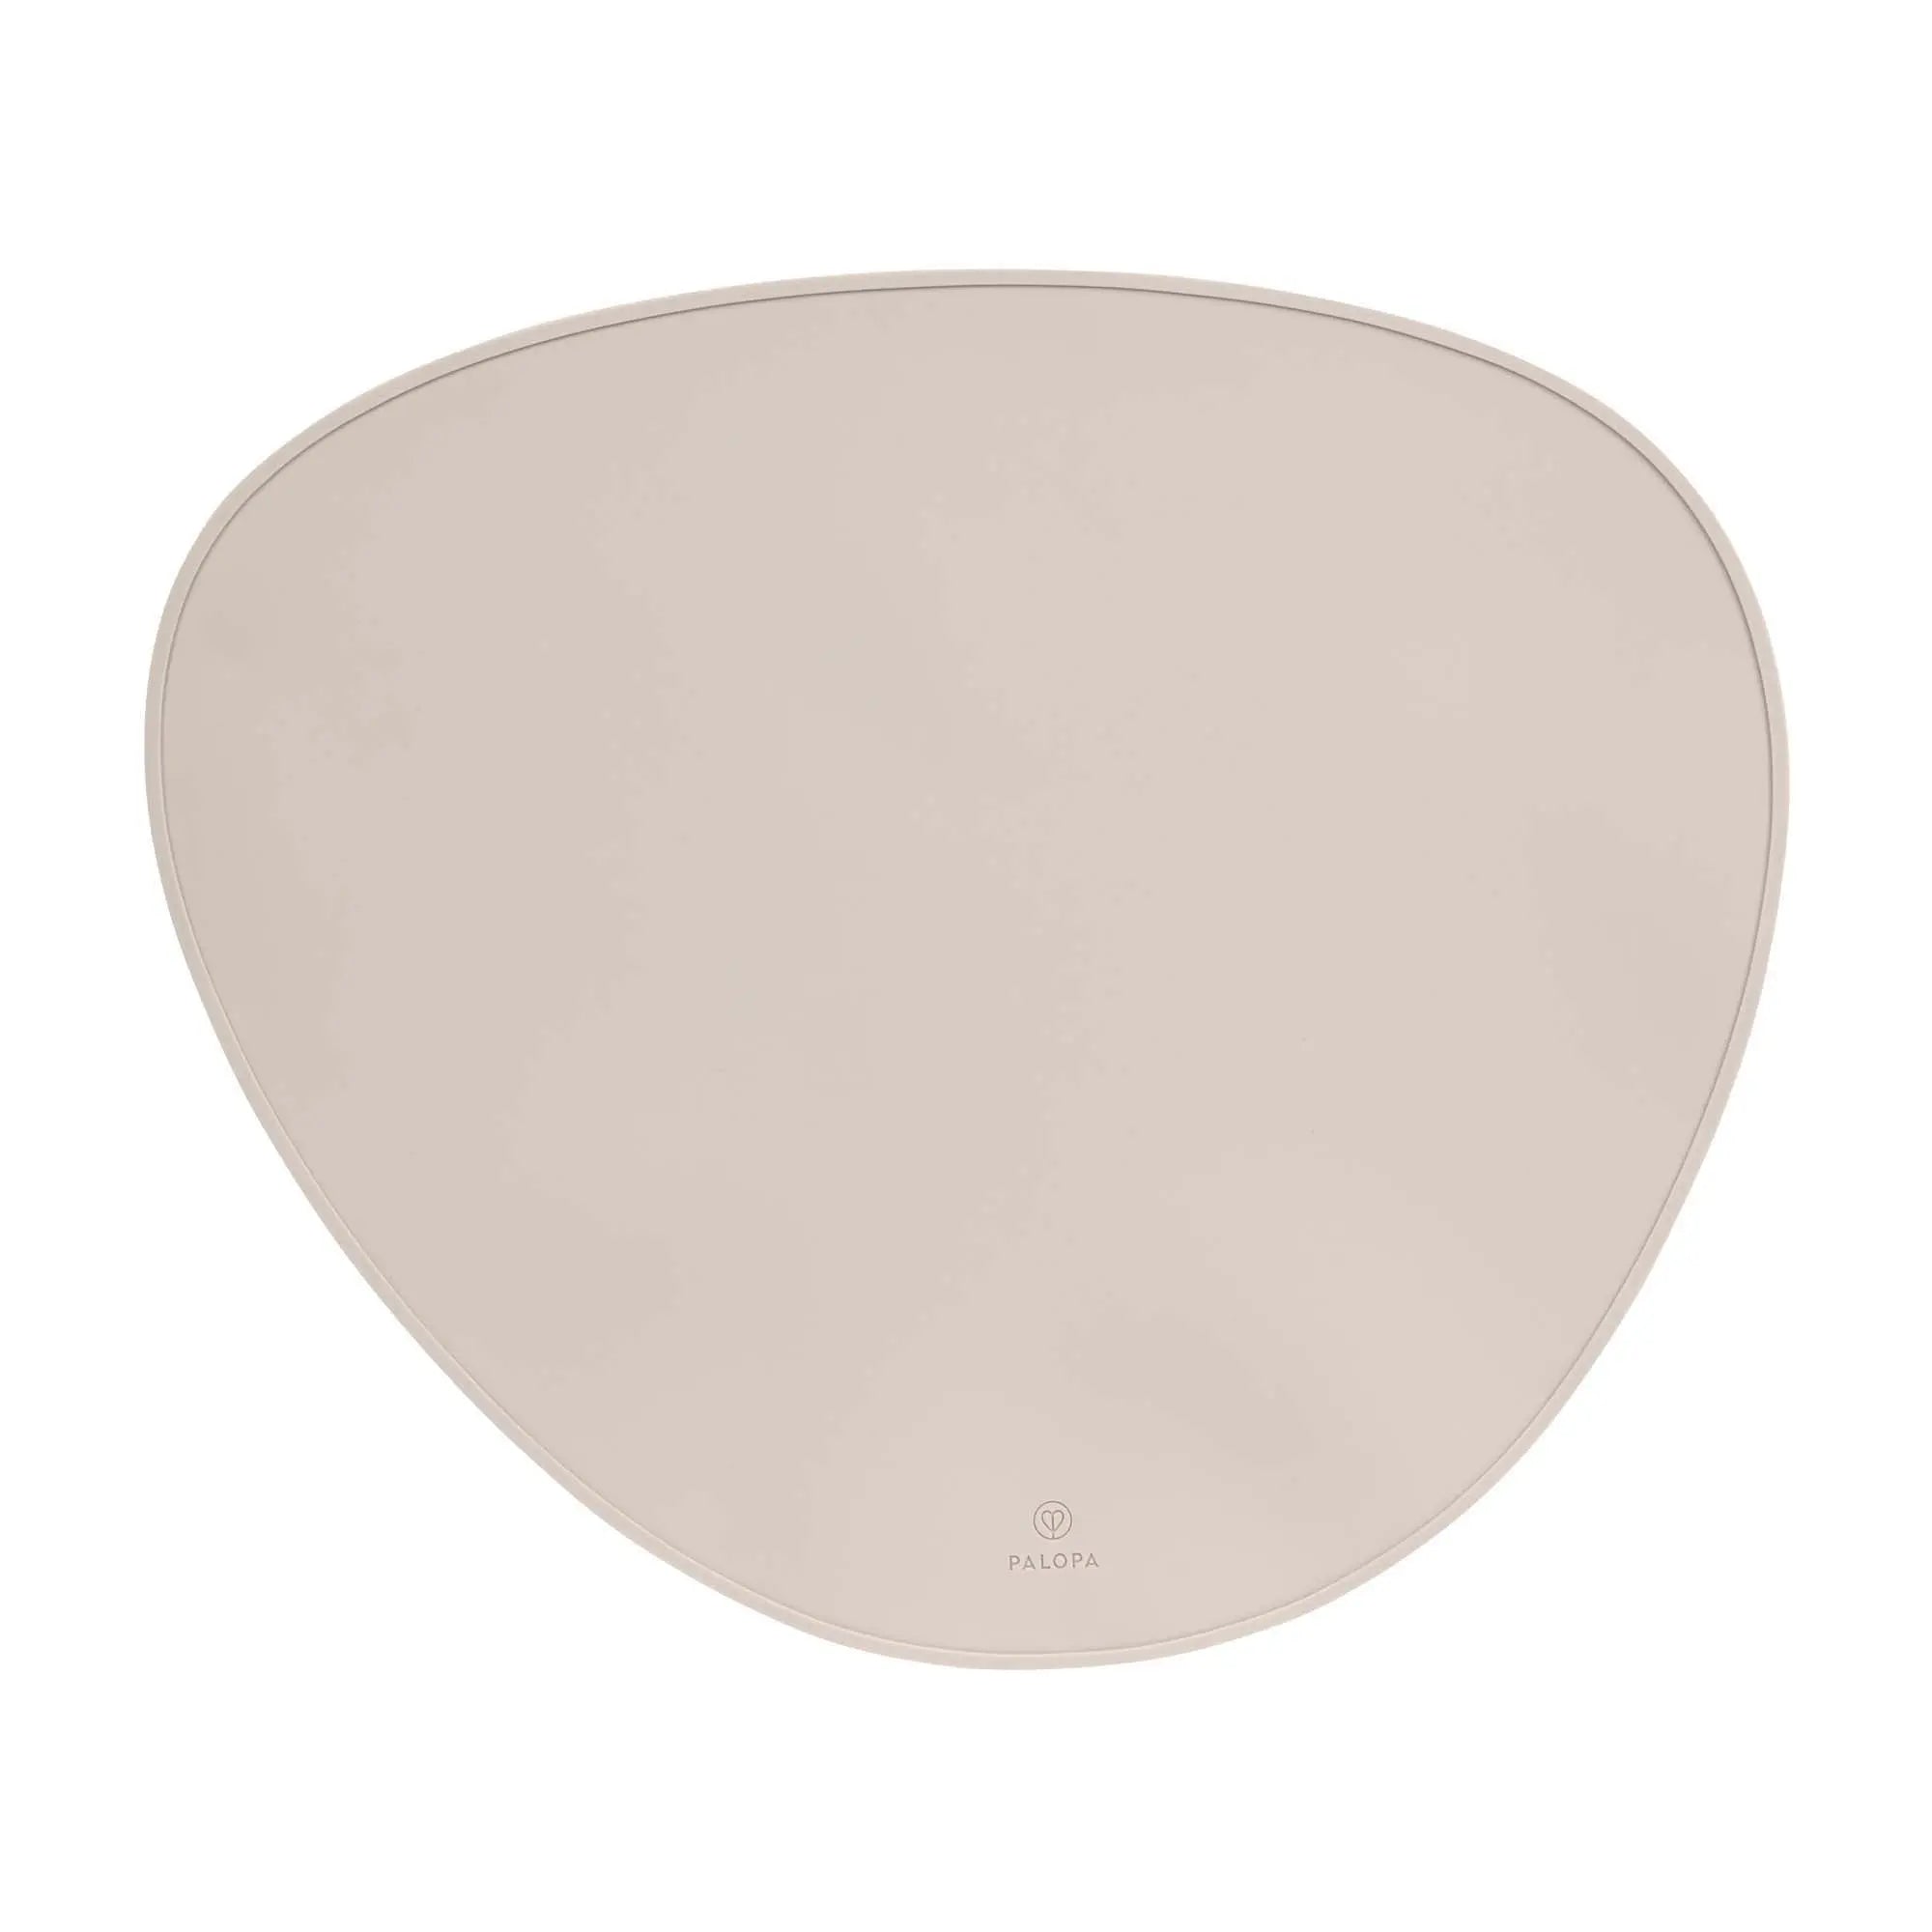 Bowl mat - Loua, light grey